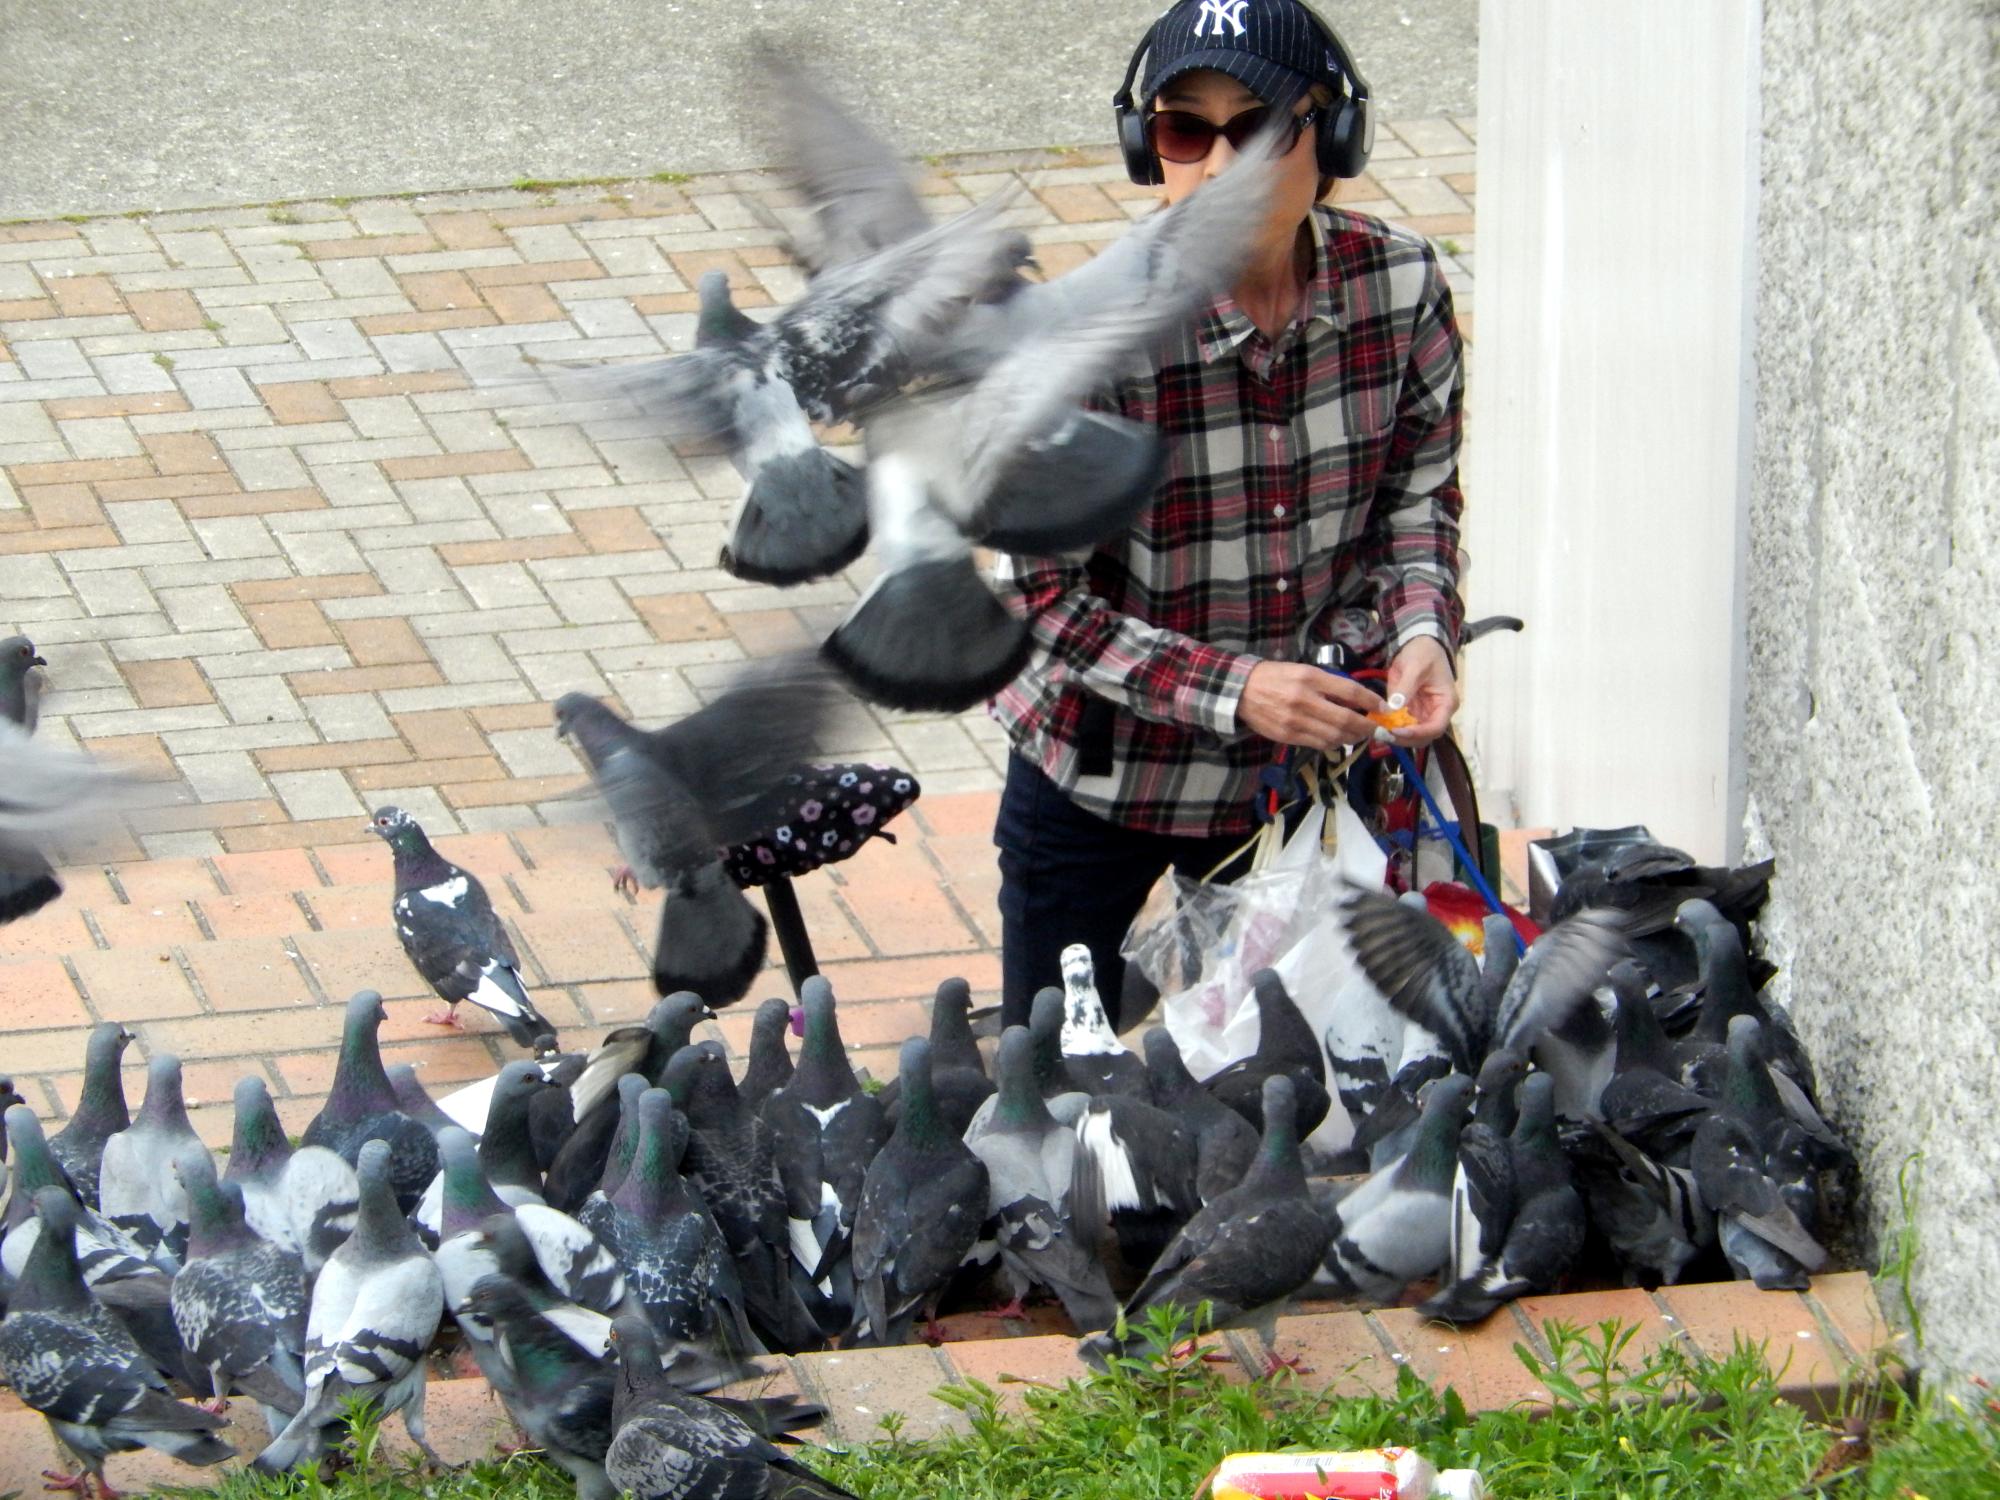 Japan (2017) - Pigeon Feeder